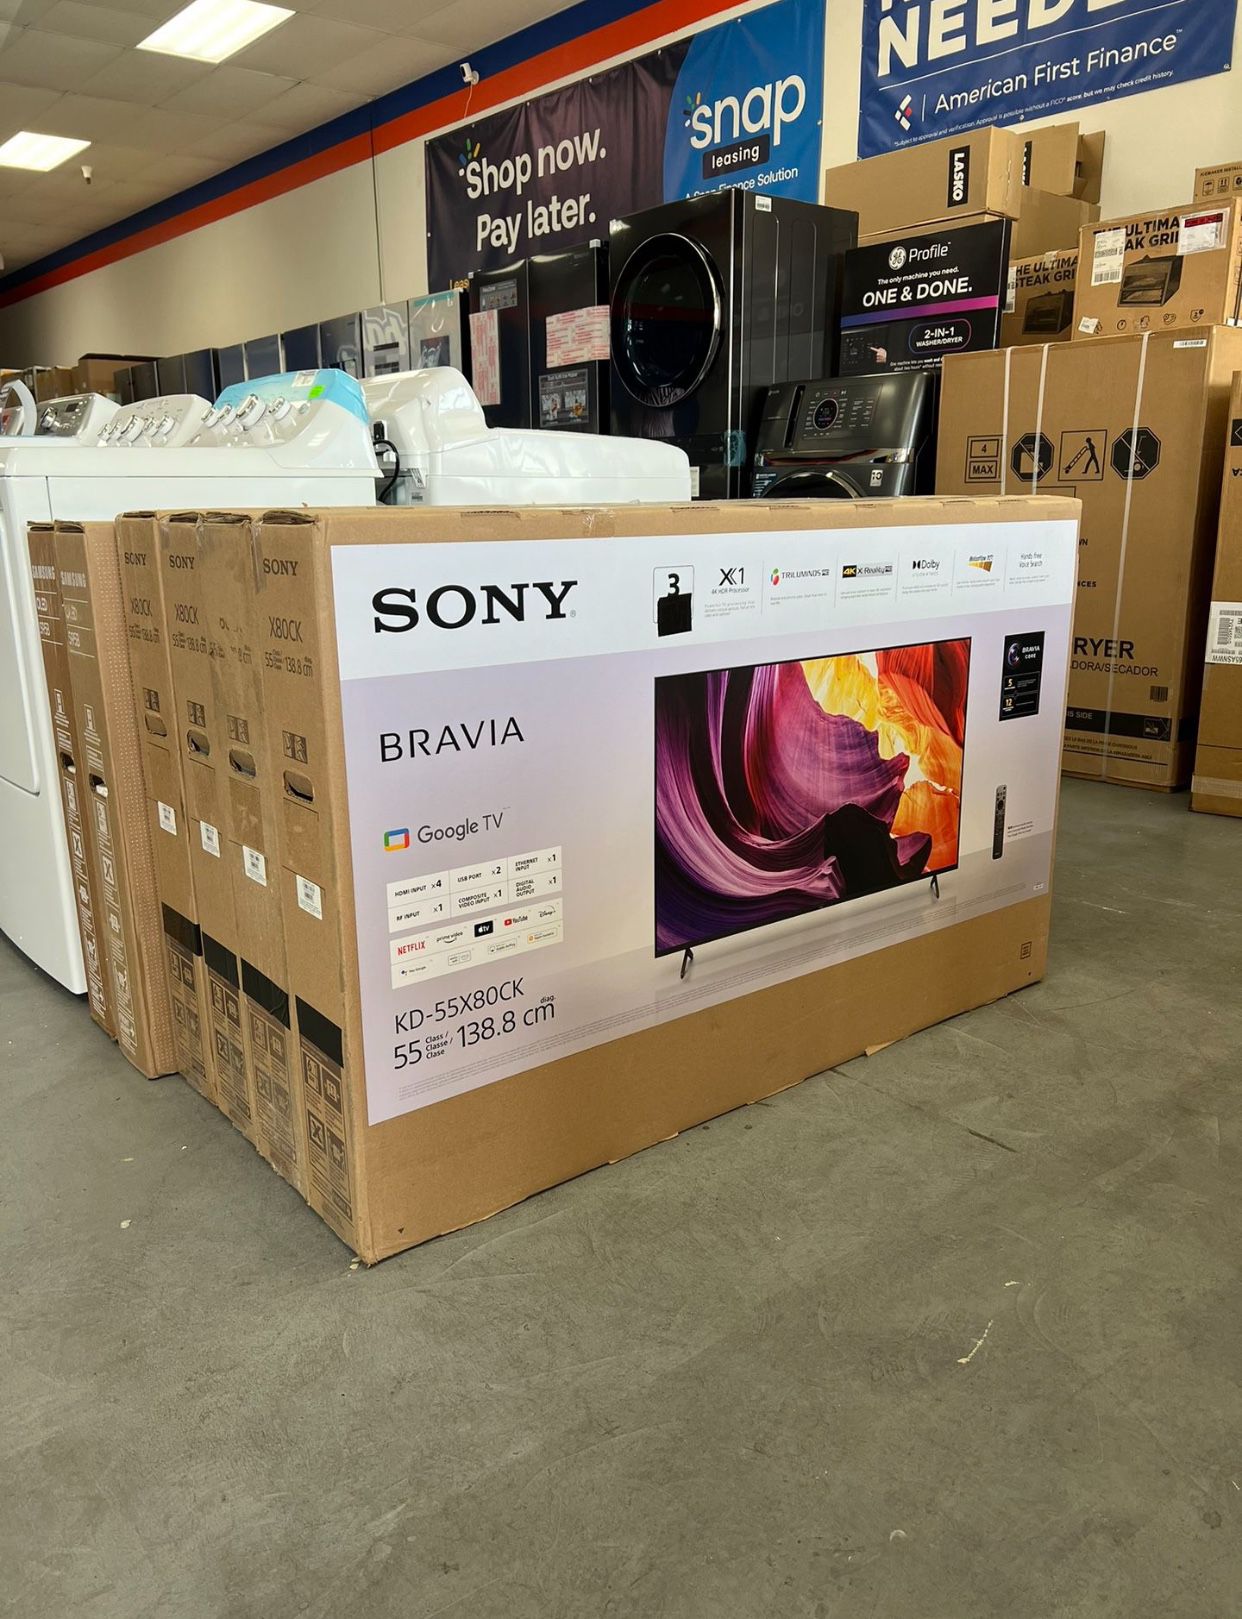 55 Sony Bravia X80K 4K Smart Tv